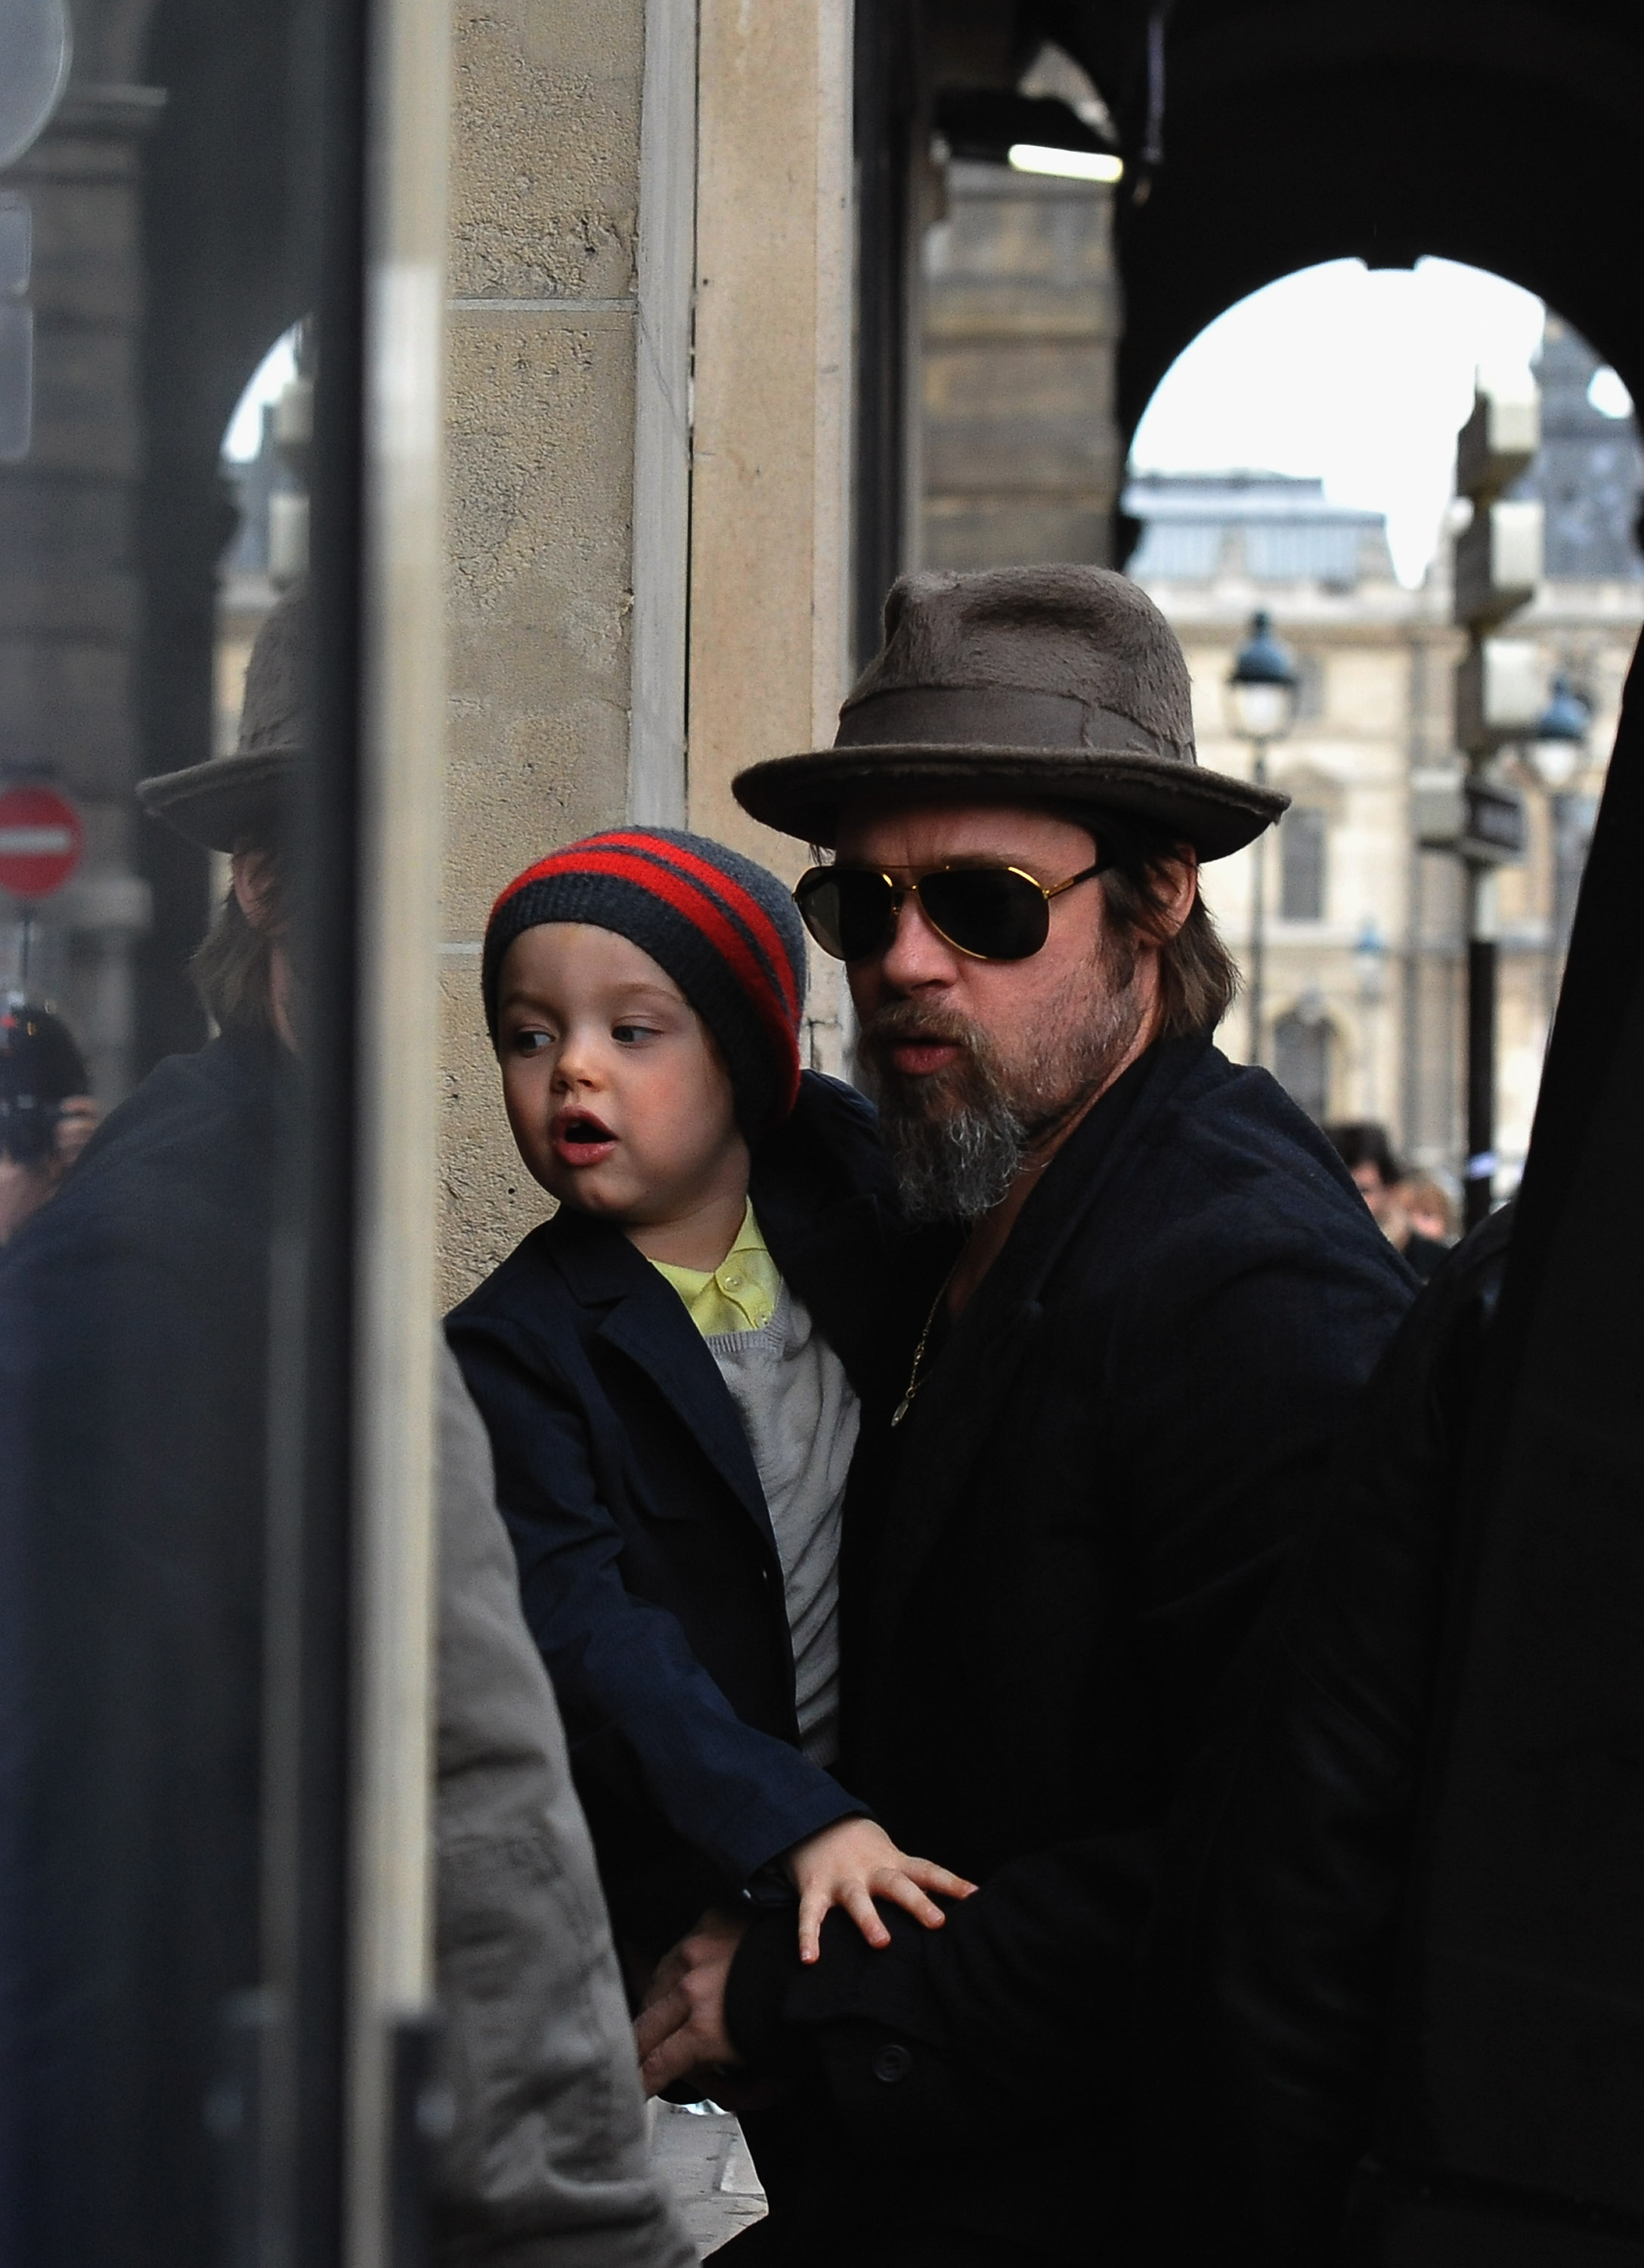 Brad Pitt y Shiloh Jolie-Pitt van de compras a la tienda Bonpoint en París, Francia, el 23 de febrero de 2010. | Fuente: Getty Images